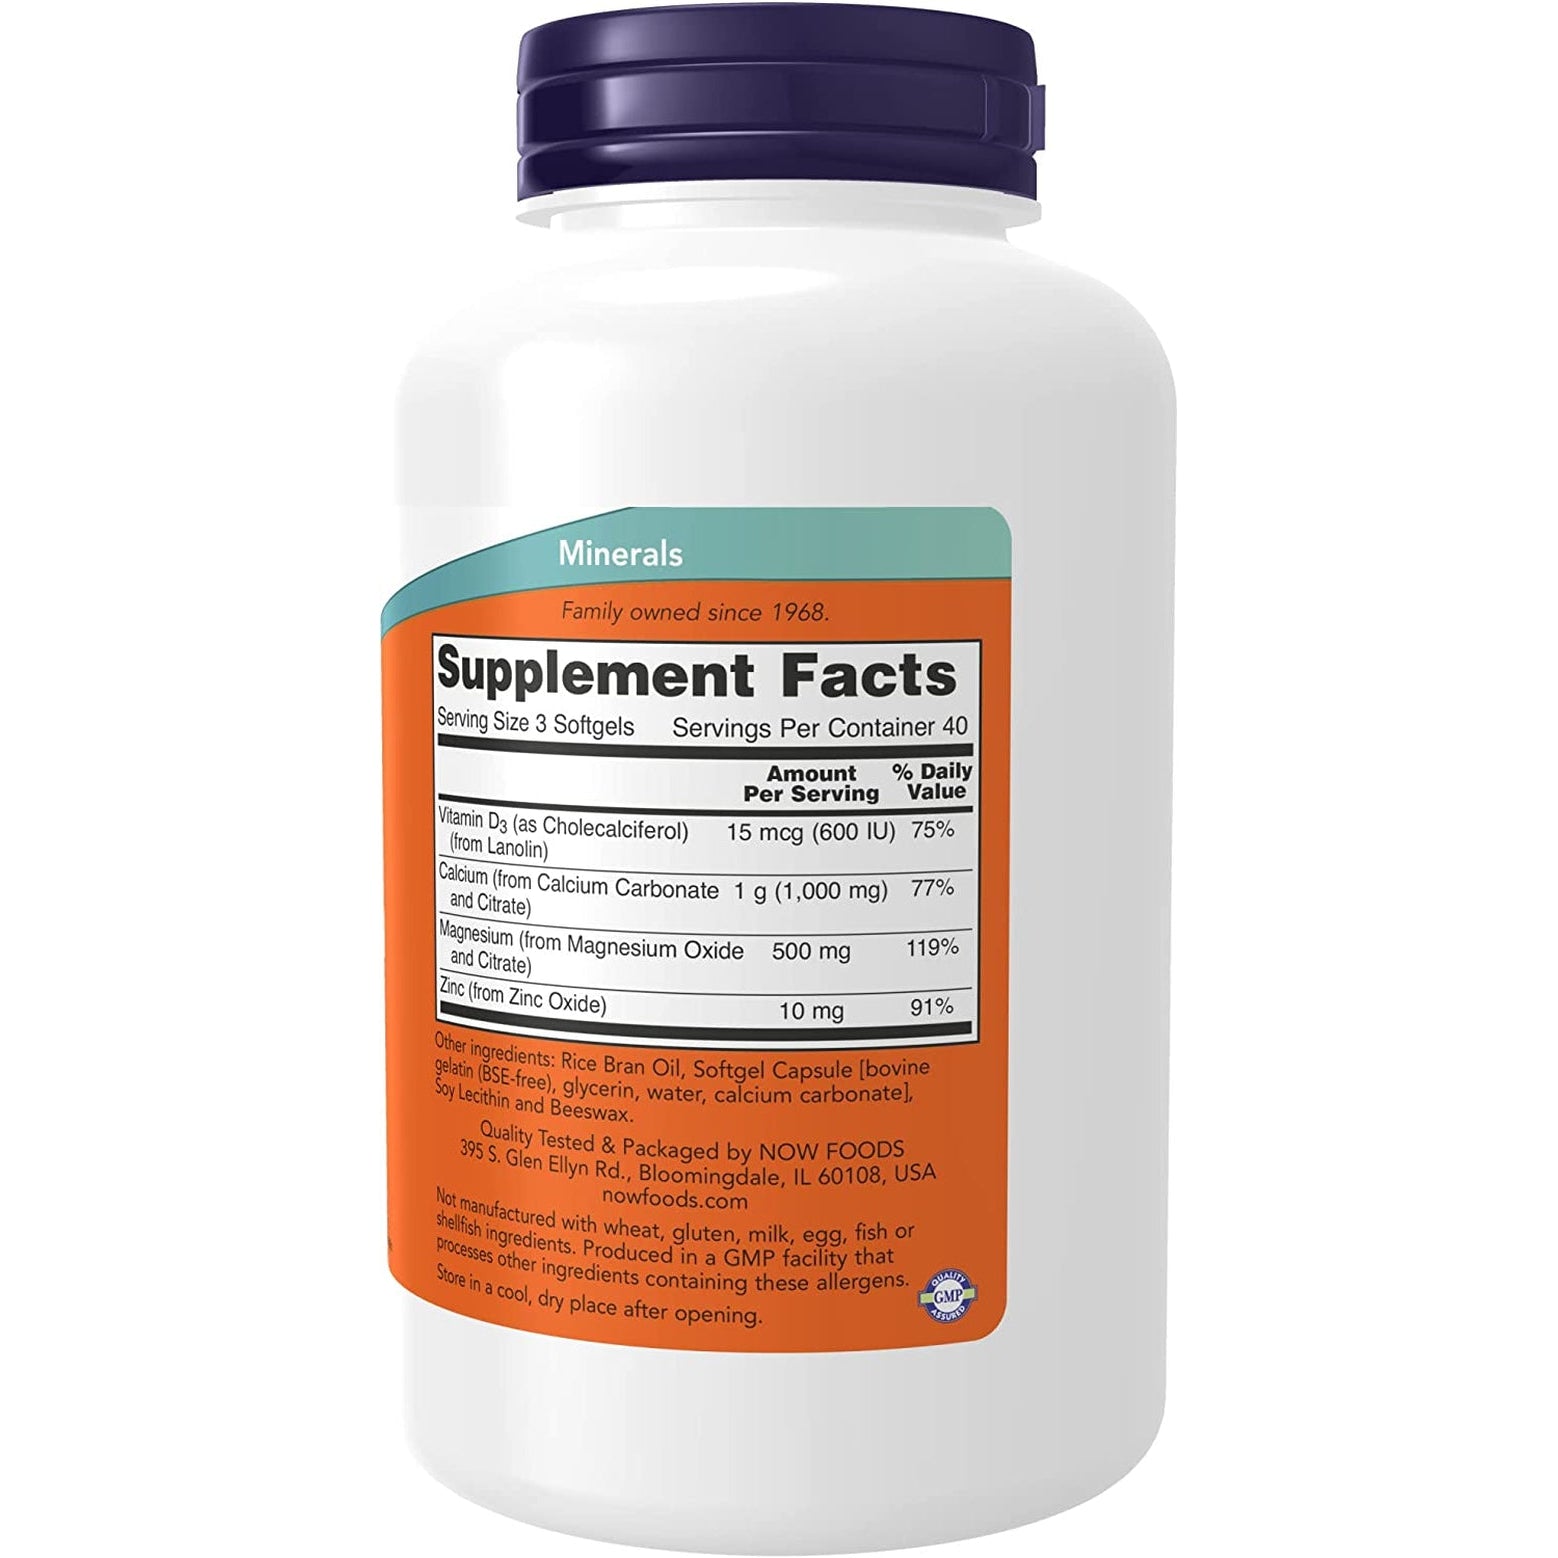 NOW Supplements Calcium & Magnesium with Vitamin D-3 & Zinc